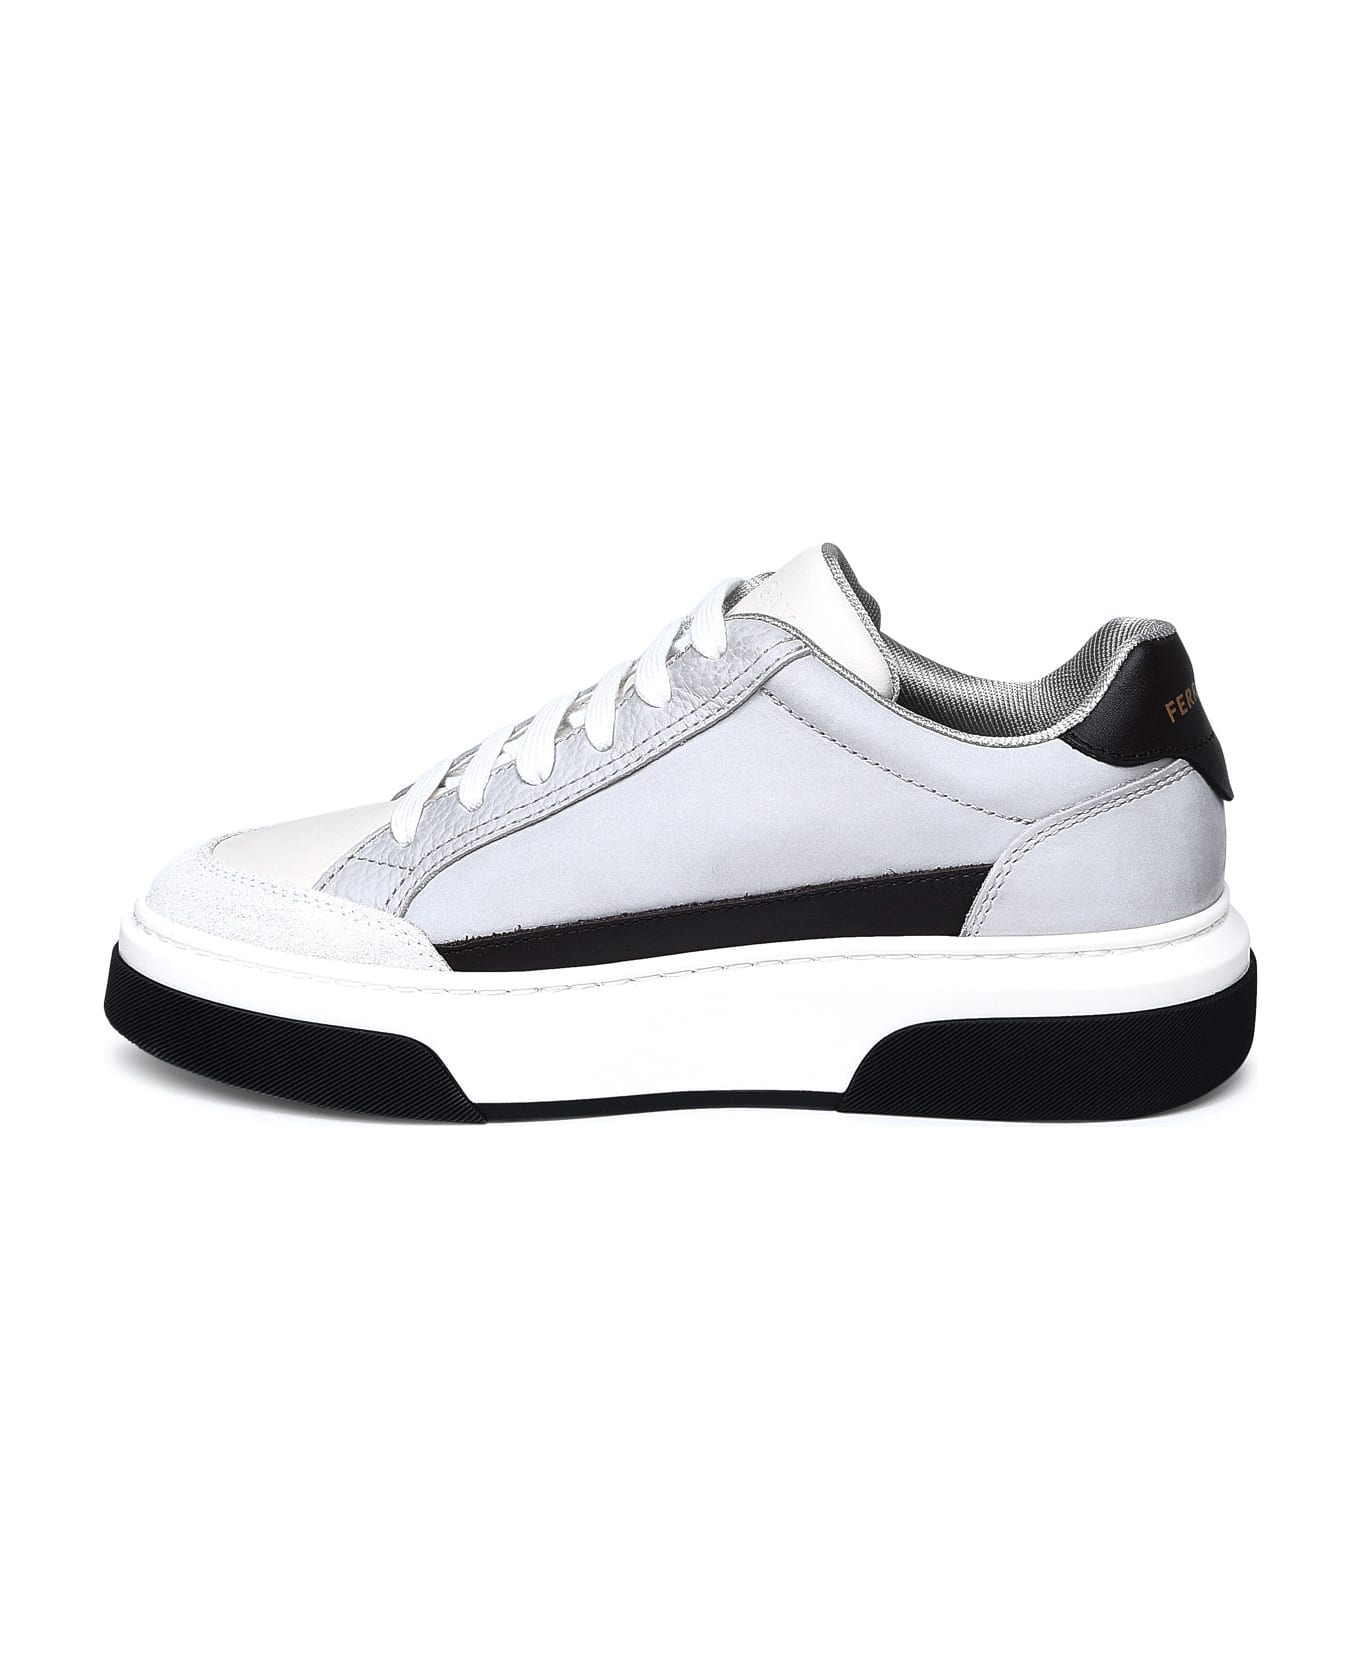 Ferragamo Multicolor Nappa Leather Sneakers - Bianco 511 スニーカー